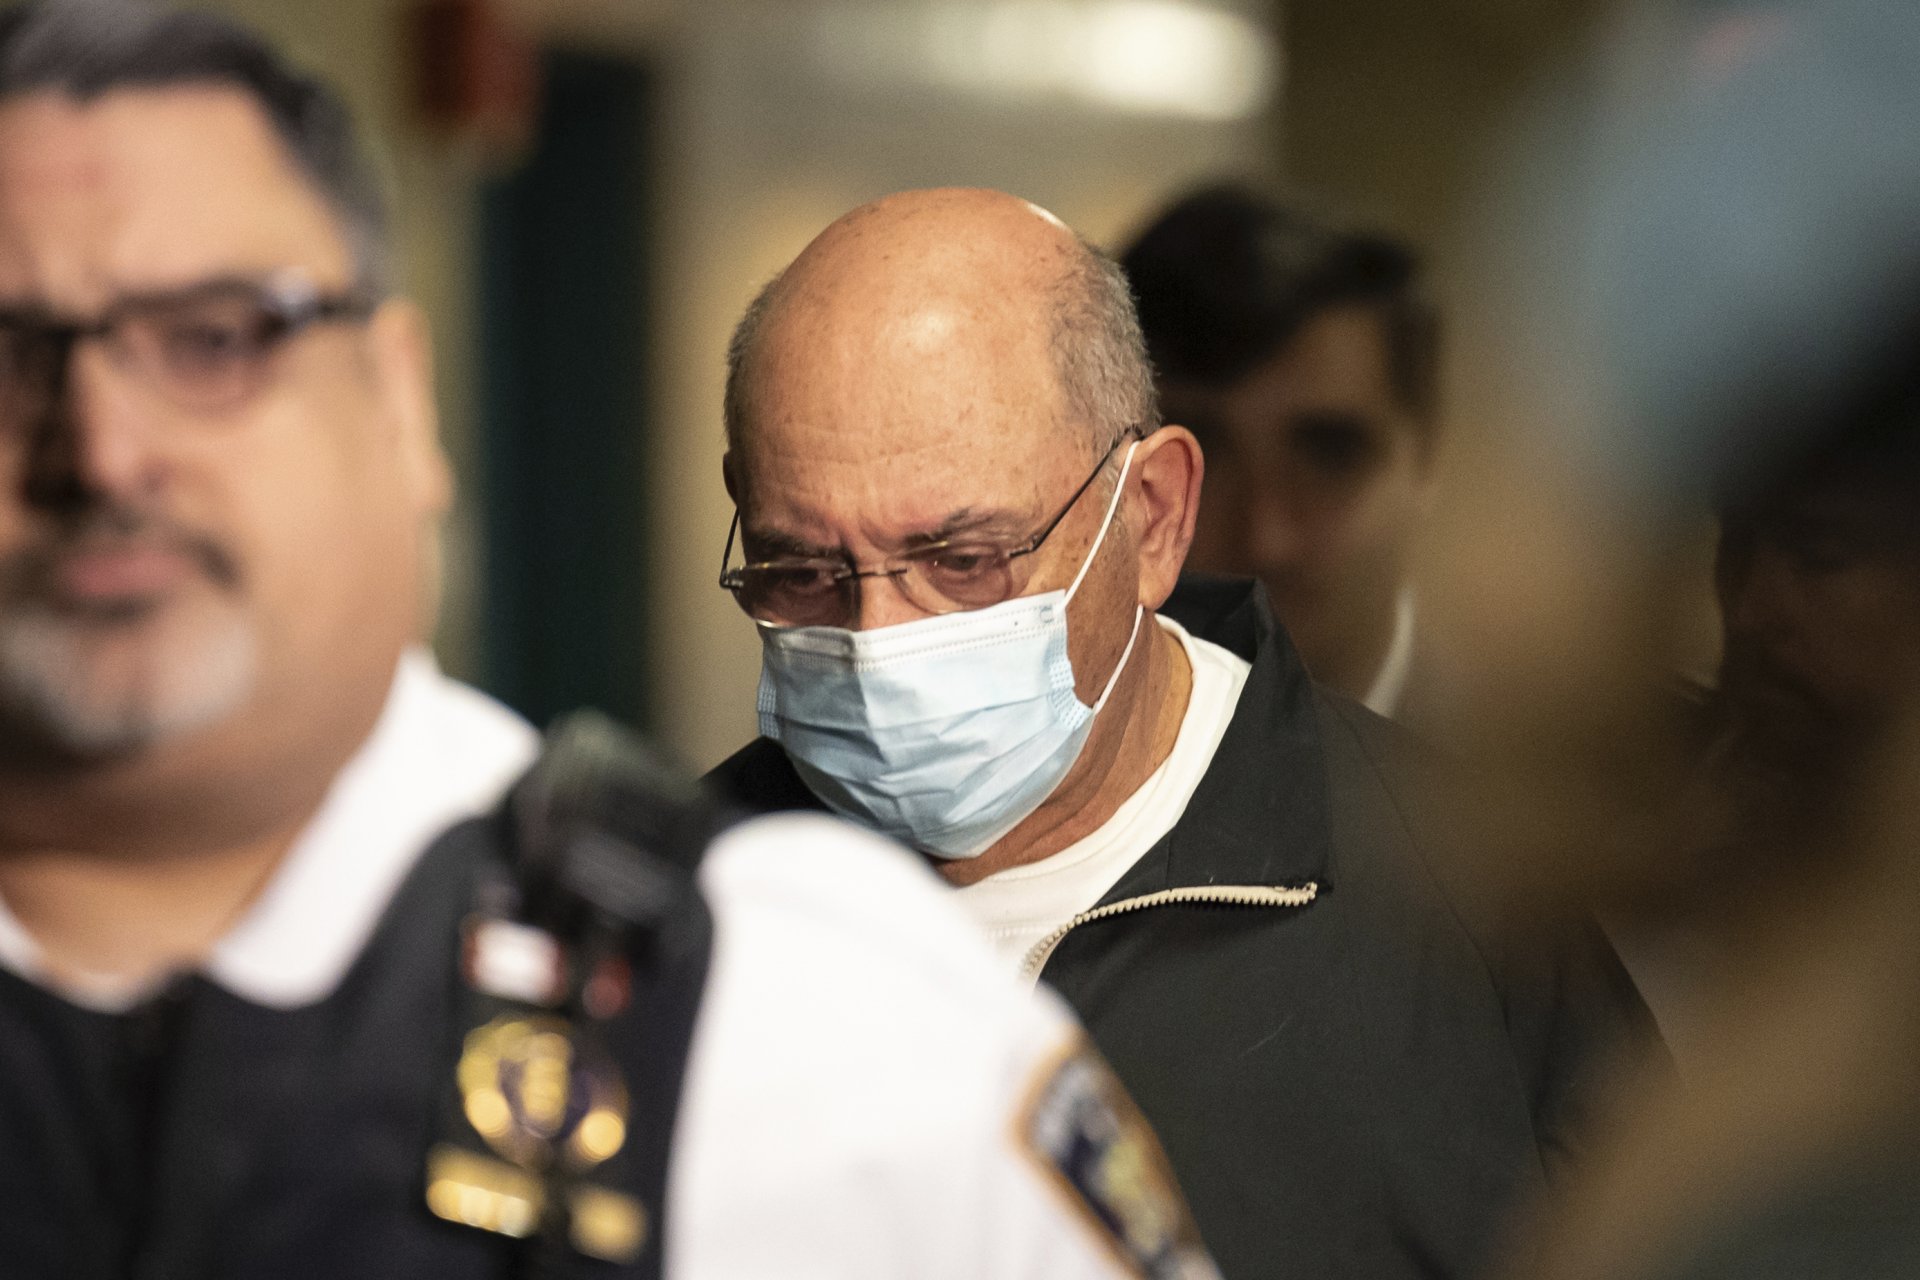  Полицаи извеждат окования с белезници Алън Уайселбърг от съда в Манхатън след произнасянето на днешната присъда от 5 месеца затвор